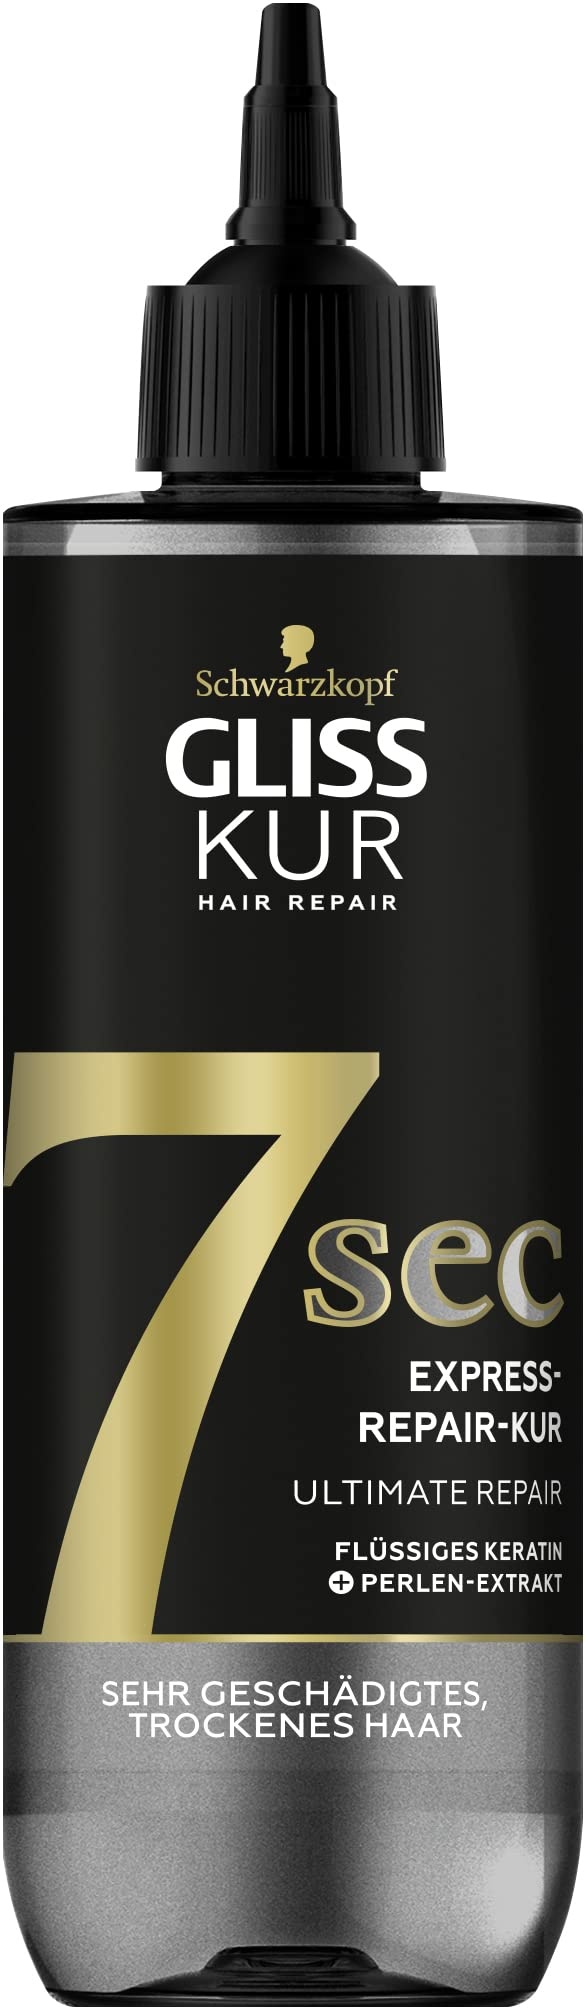 Gliss Kur 7 Sec Express-Repair Kur Ultimate Repair (200 ml), Haarkur repariert das Haar in nur 7 Sekunden, für 7x stärkeres Haar und 7x weniger Haarbruch